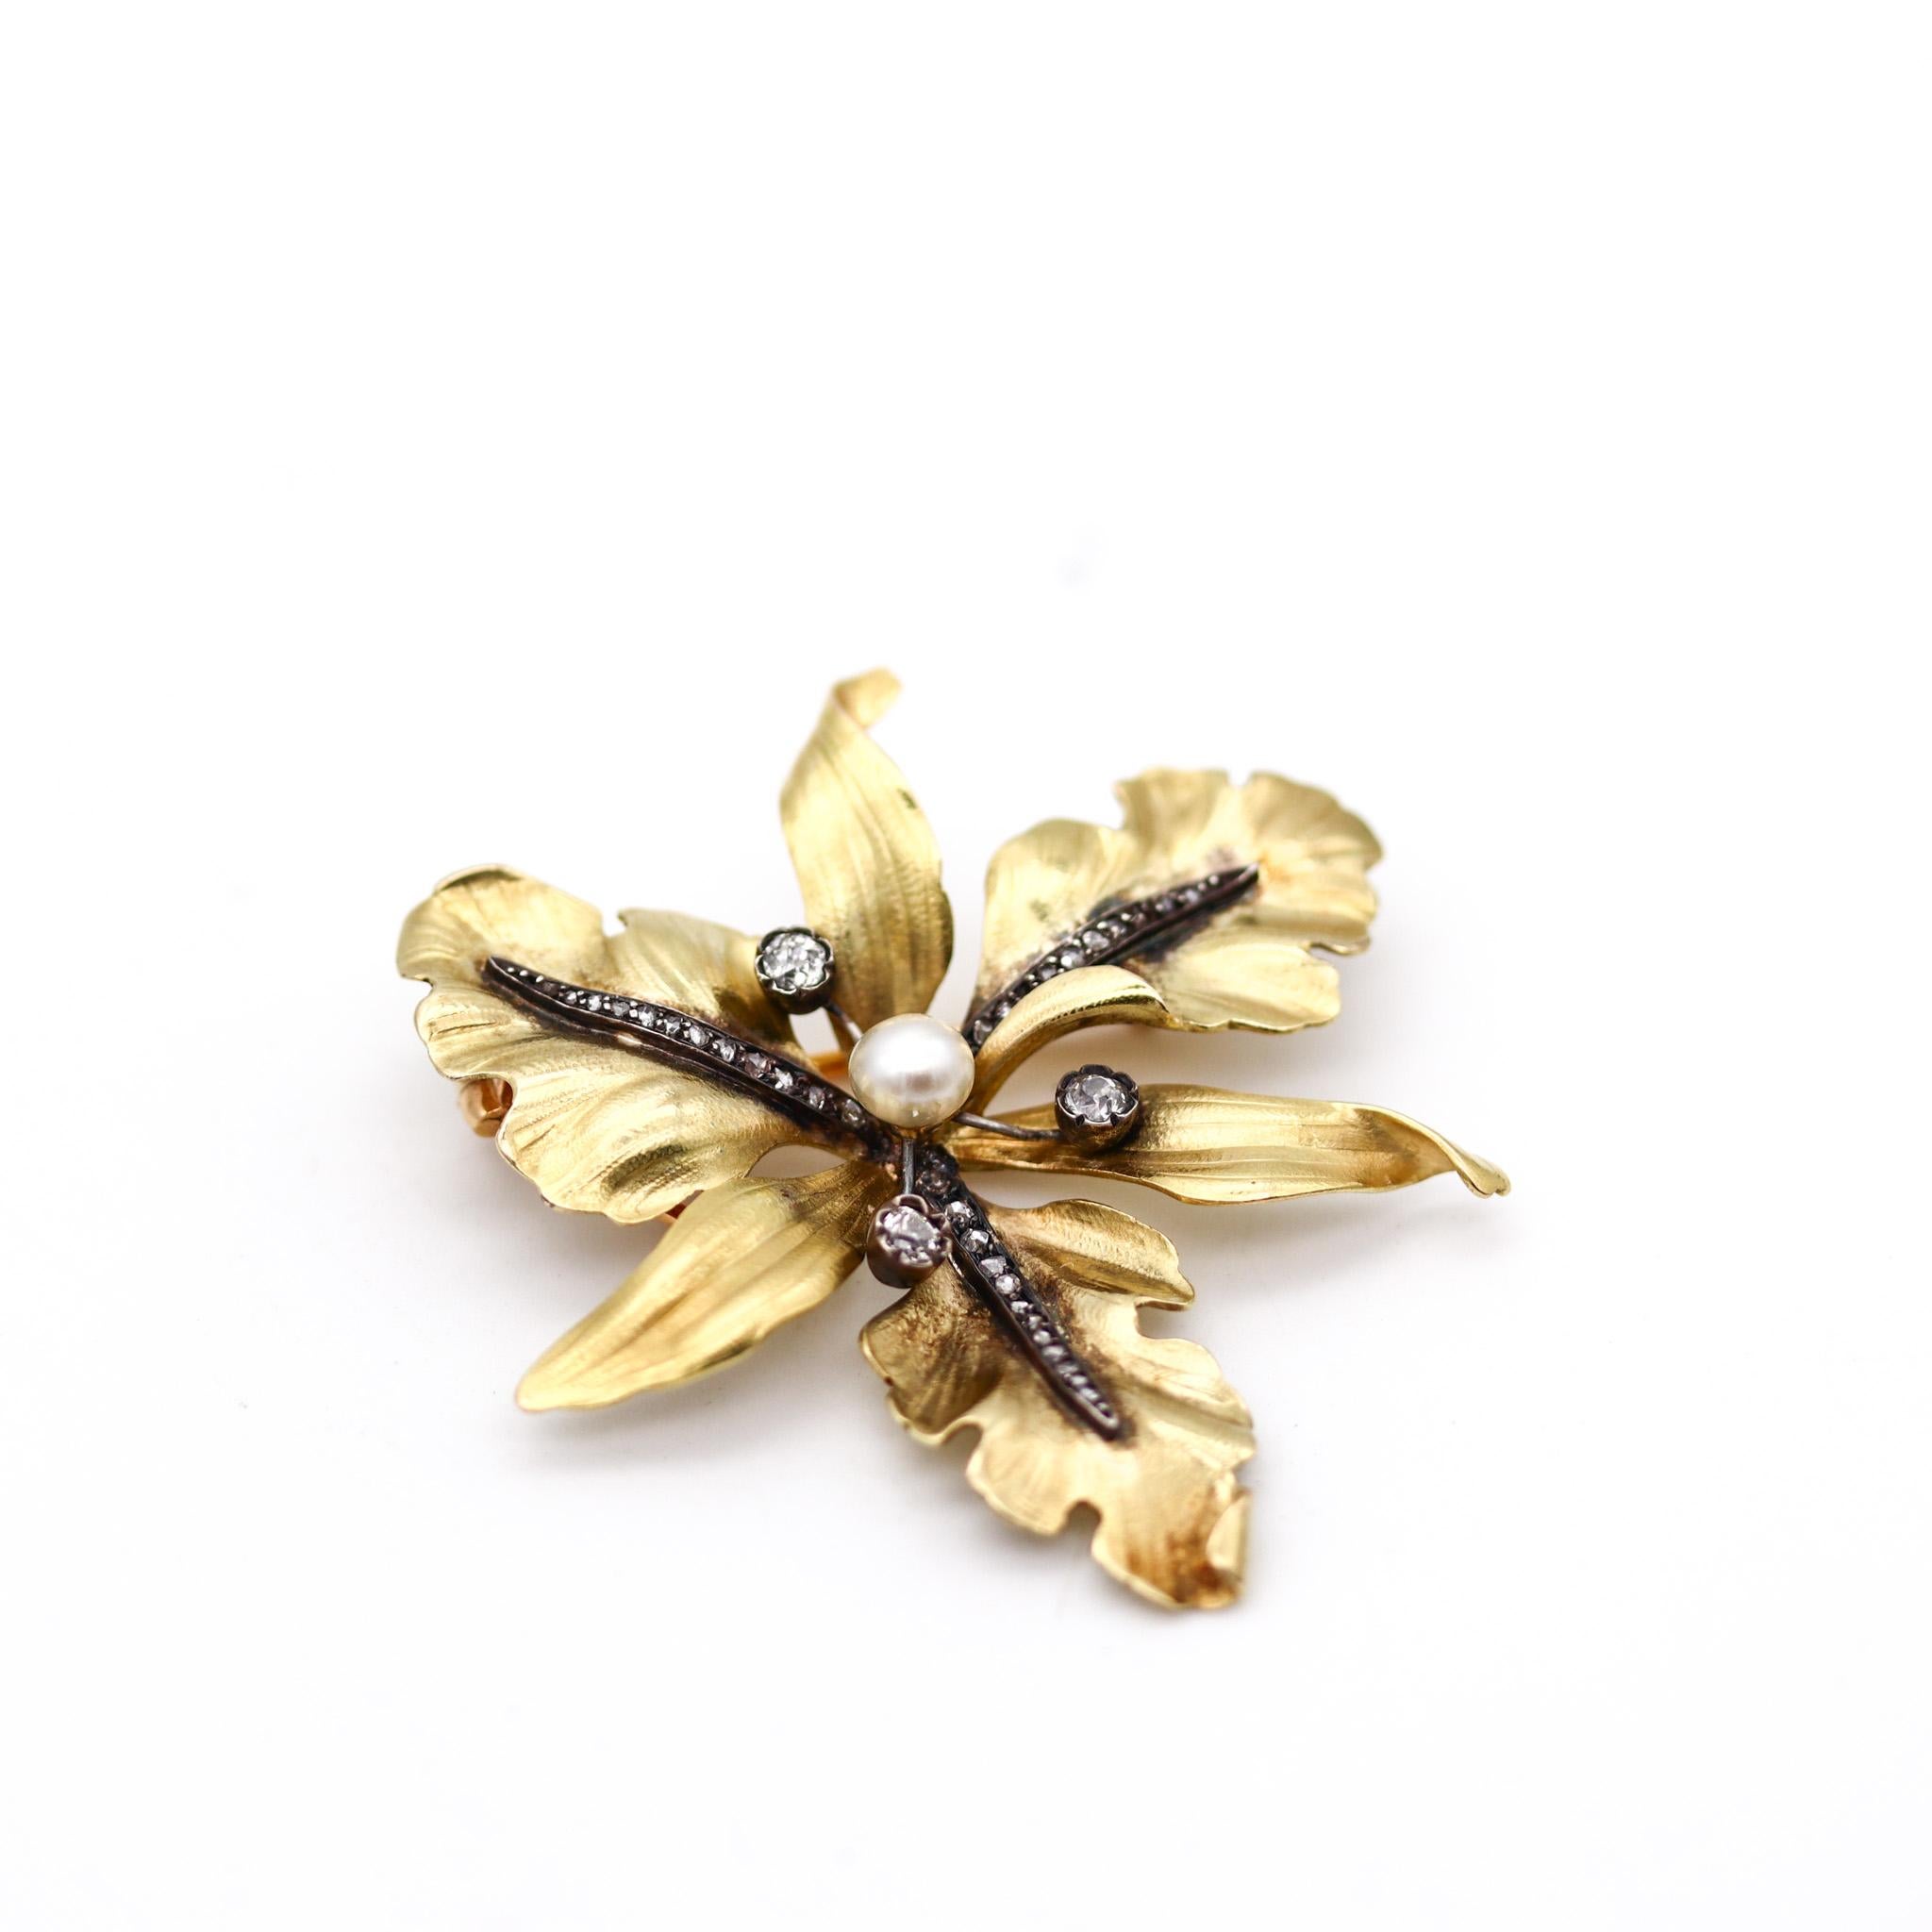 Pendentif-broche en forme d'orchidée de l'Art nouveau français.

Magnifique bijou de la période art nouveau, créé en France au tournant du 19e siècle, vers 1900. Réalisé en forme d'orchidée à six pétales en or jaune massif de 18 carats avec des